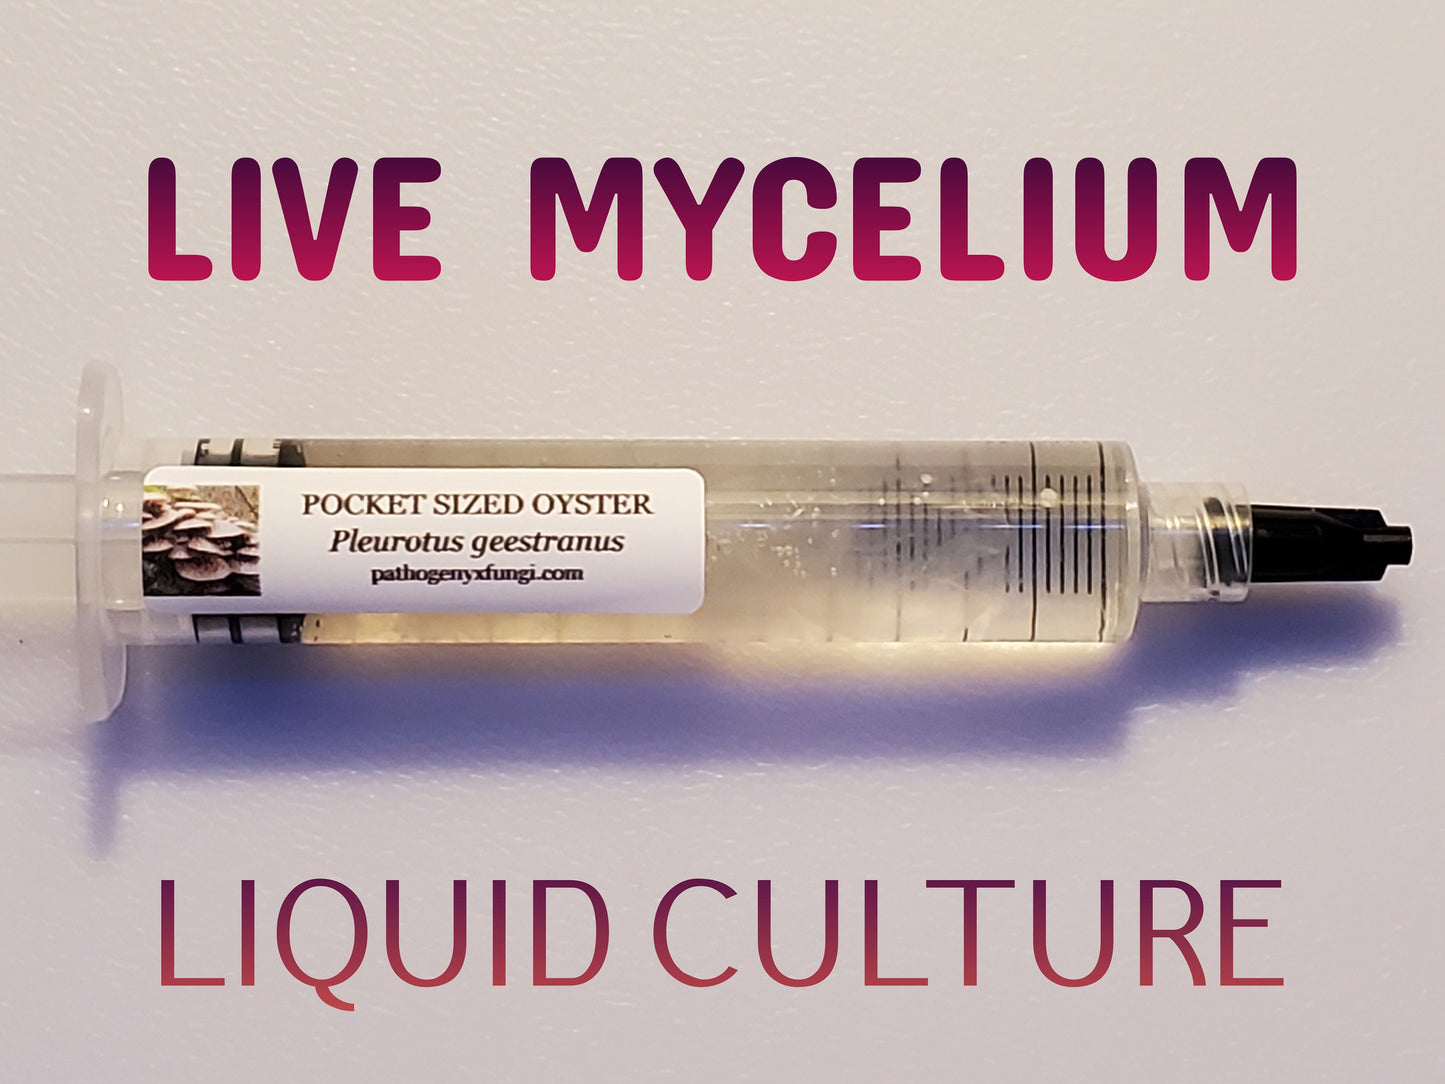 POCKET SIZED OYSTER Mushroom, liquid culture syringe, Premium Mycelium™